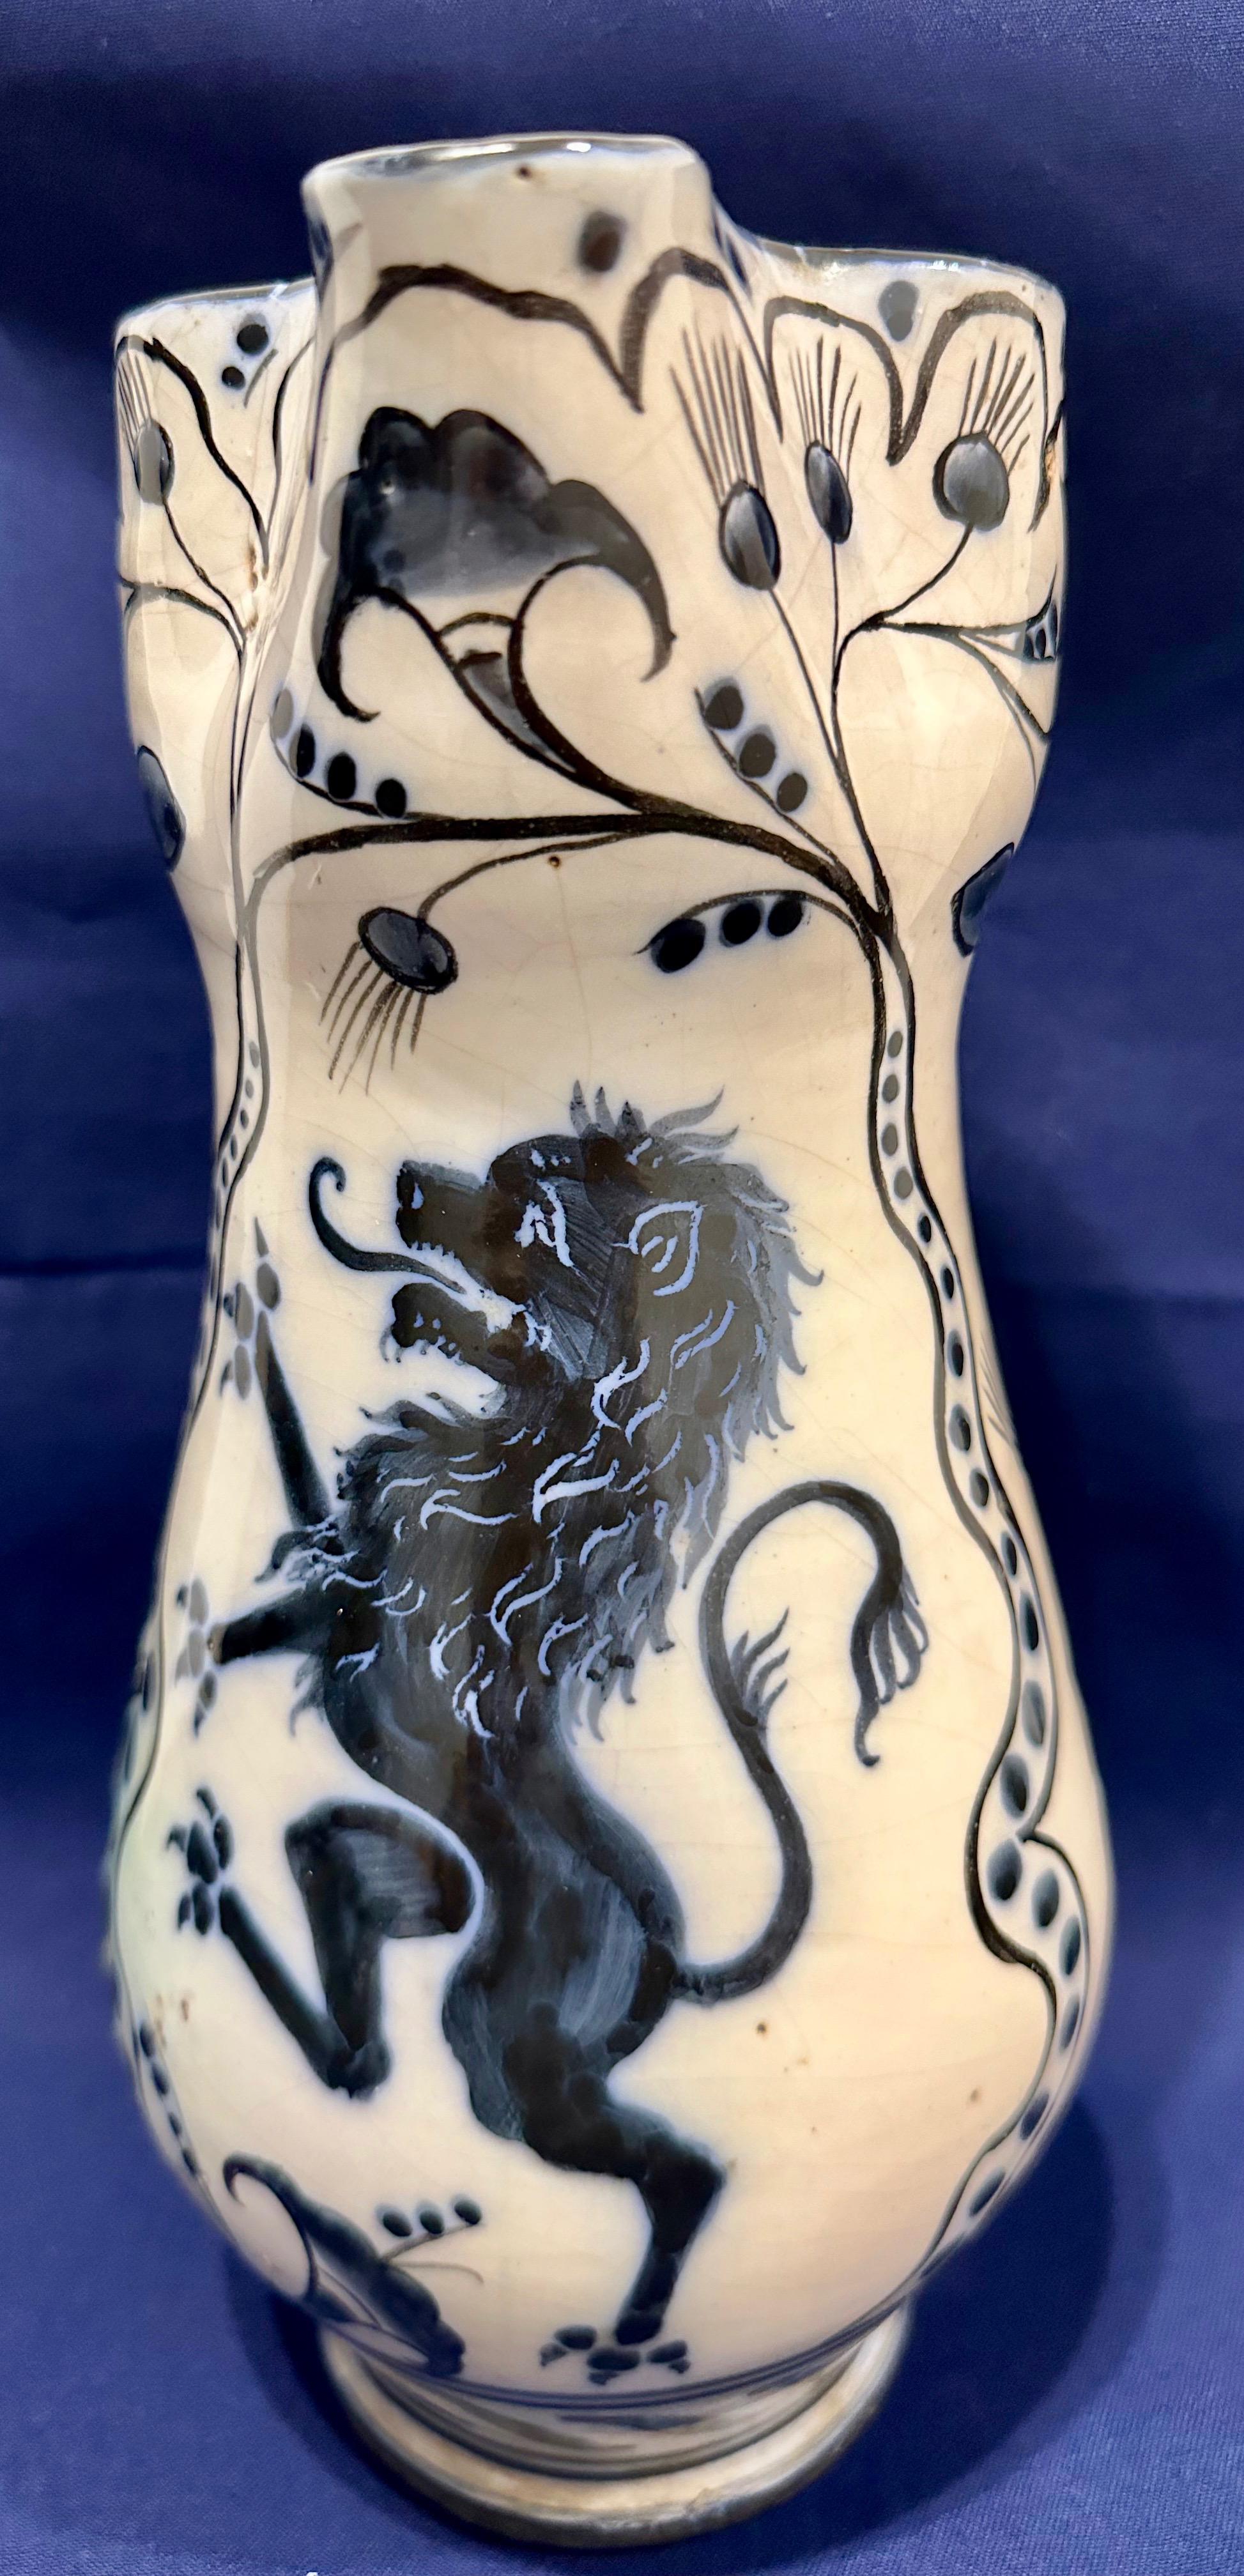 Italienischer Maiolica-Krug mit einem zügellosen Löwen, Mittelitalien, um 1850

Diese nicht gekennzeichnete Maiolica-Kanne mit cremeweißem Hintergrund ist auf der Vorderseite mit einem kobaltblauen, aufgerichteten Löwen verziert. Die übrige